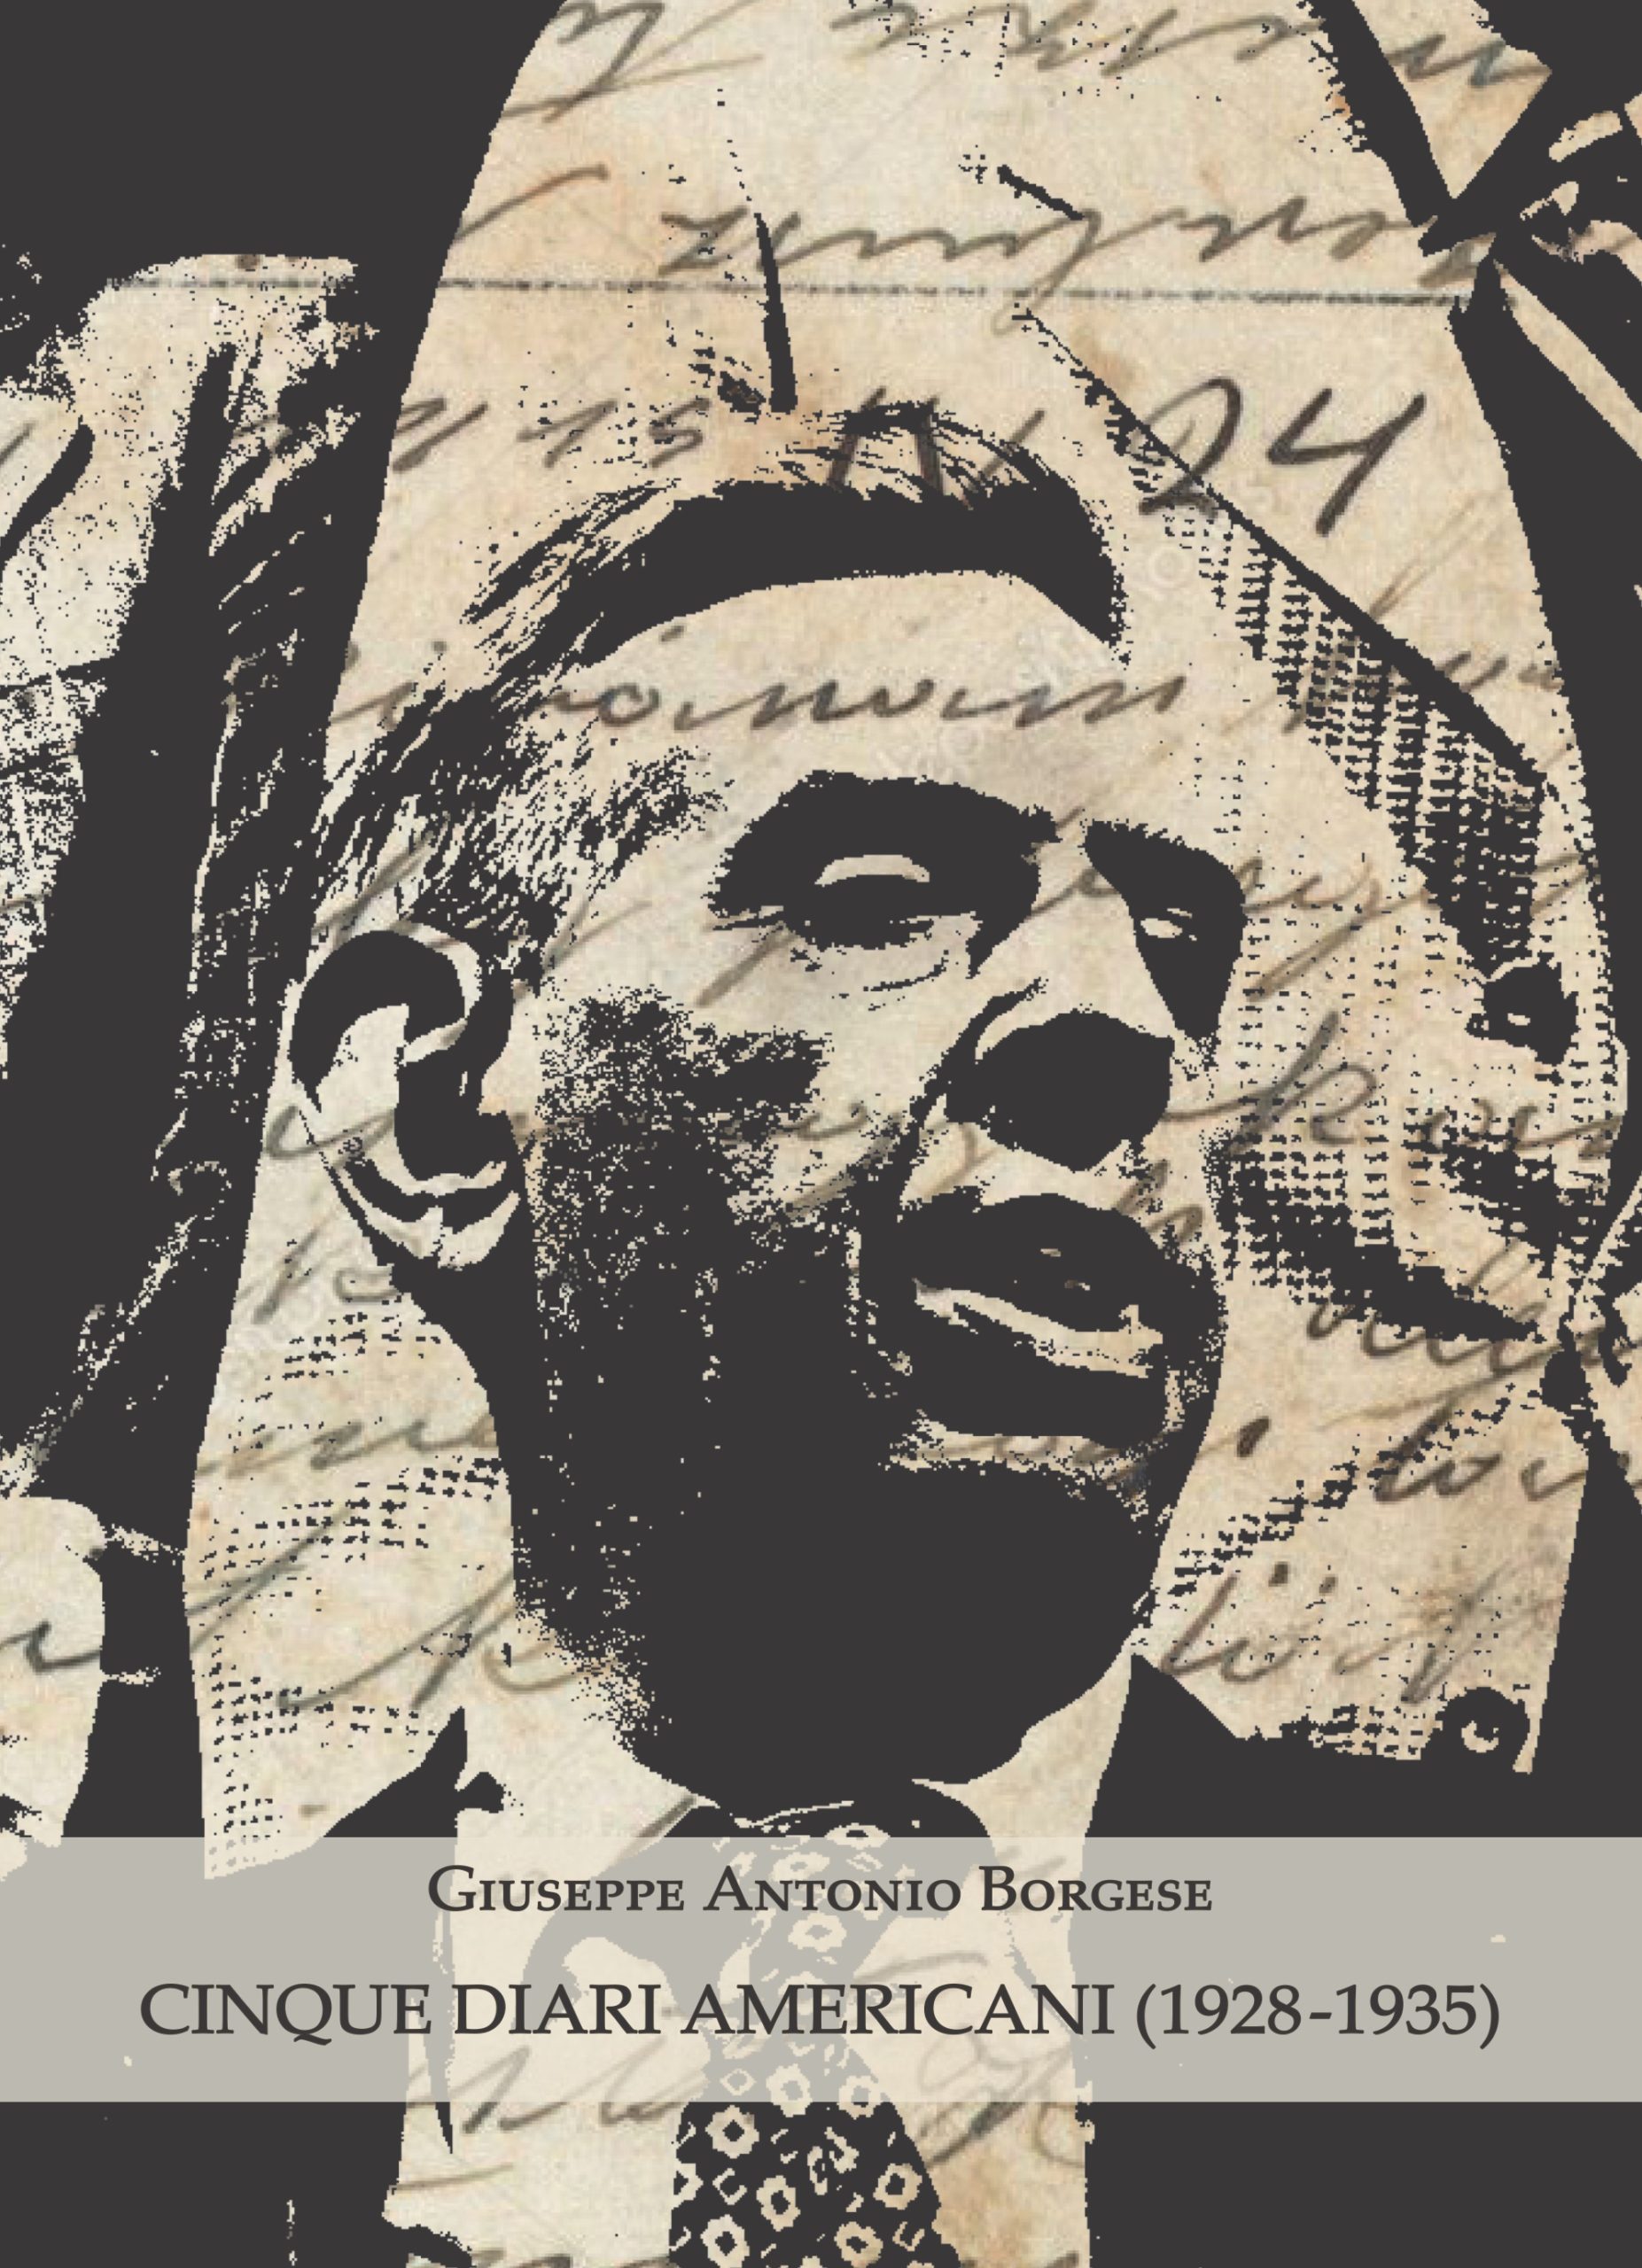 Cinque diari americani del critico Giuseppe Antonio Borgese in un’inedita edizione a Firenze